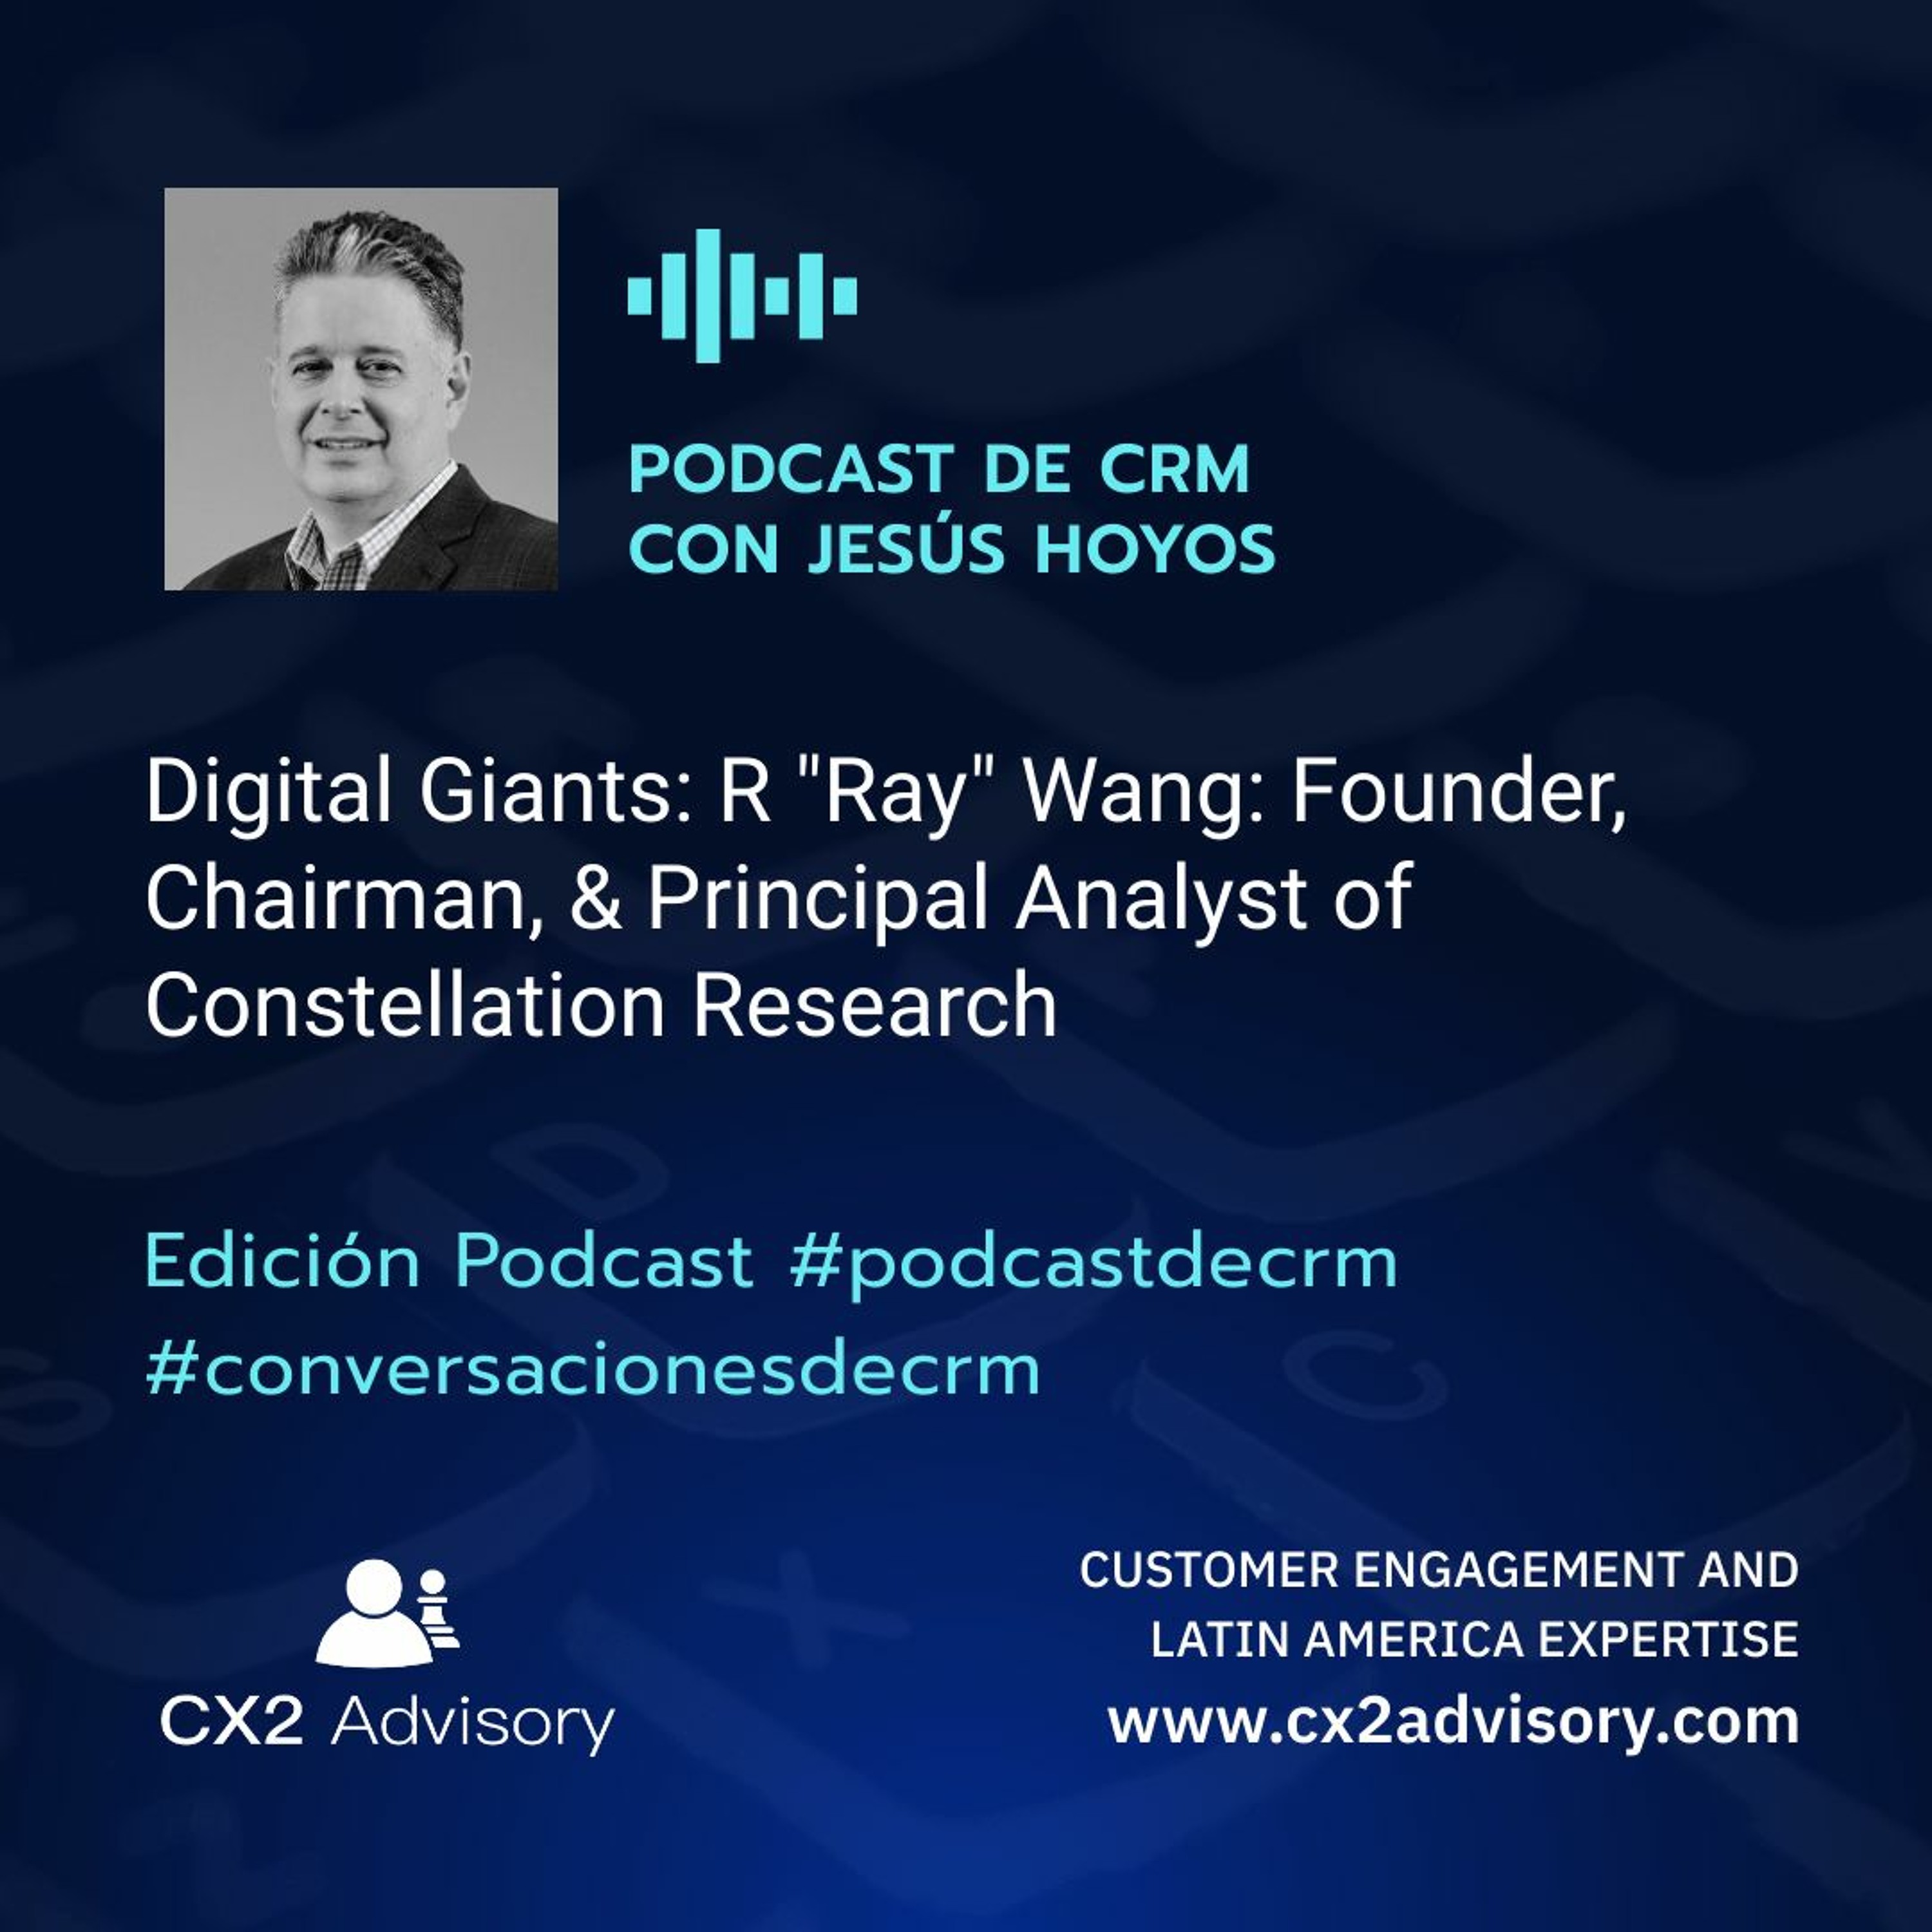 Edición Podcast - Conversaciones de CRM: Digital Giants